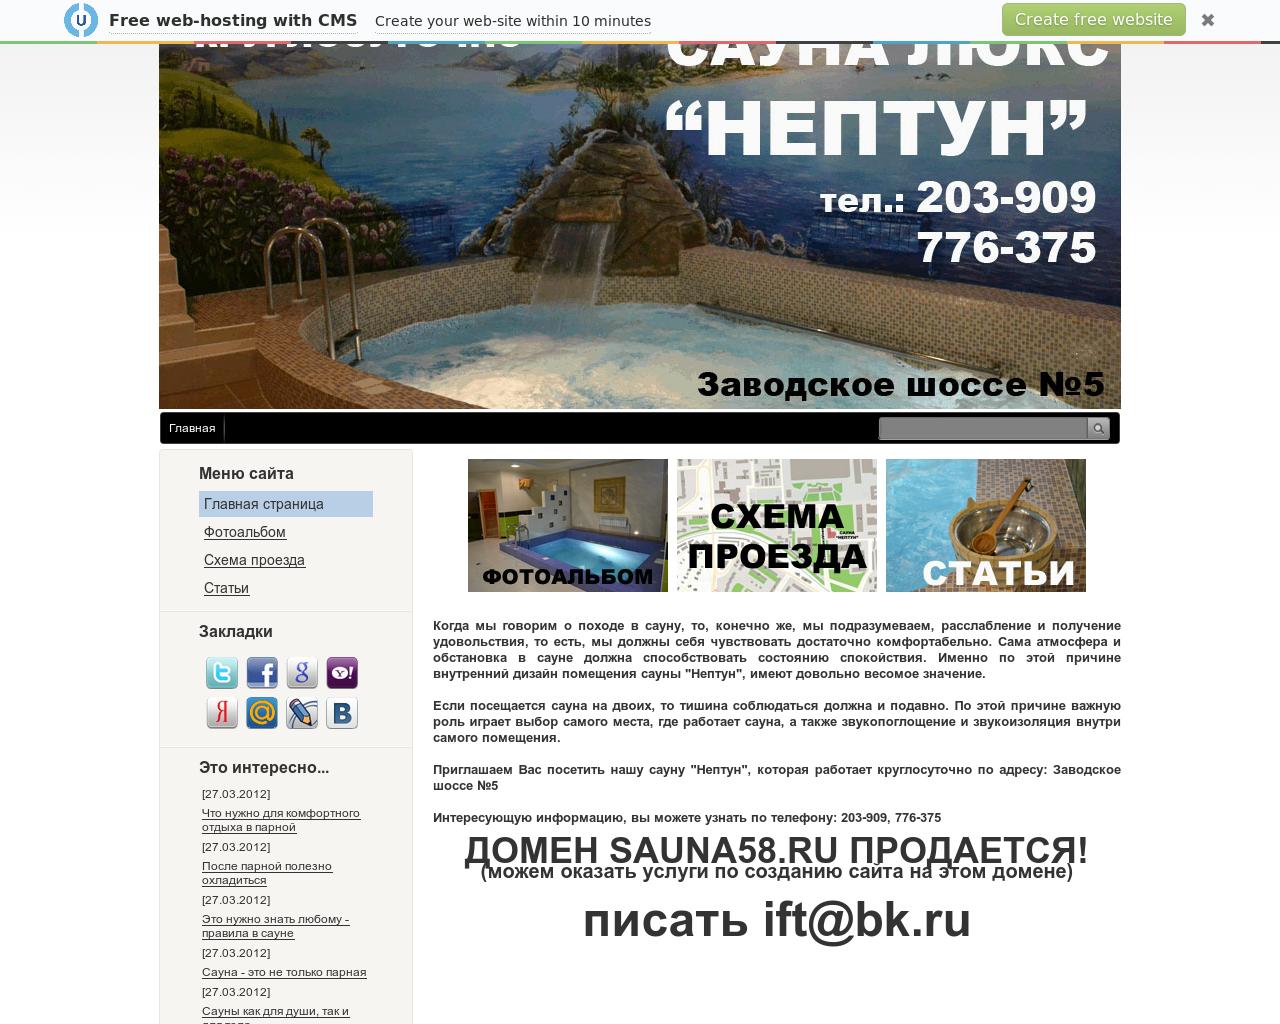 Изображение сайта sauna58.ru в разрешении 1280x1024